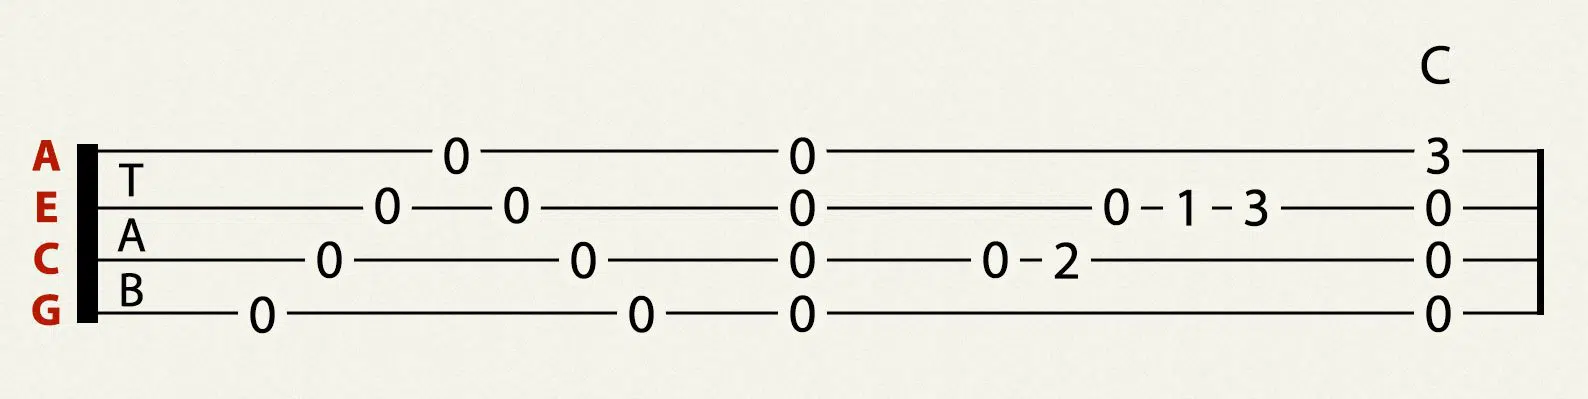 ukulele tablature example ukuchordnamer